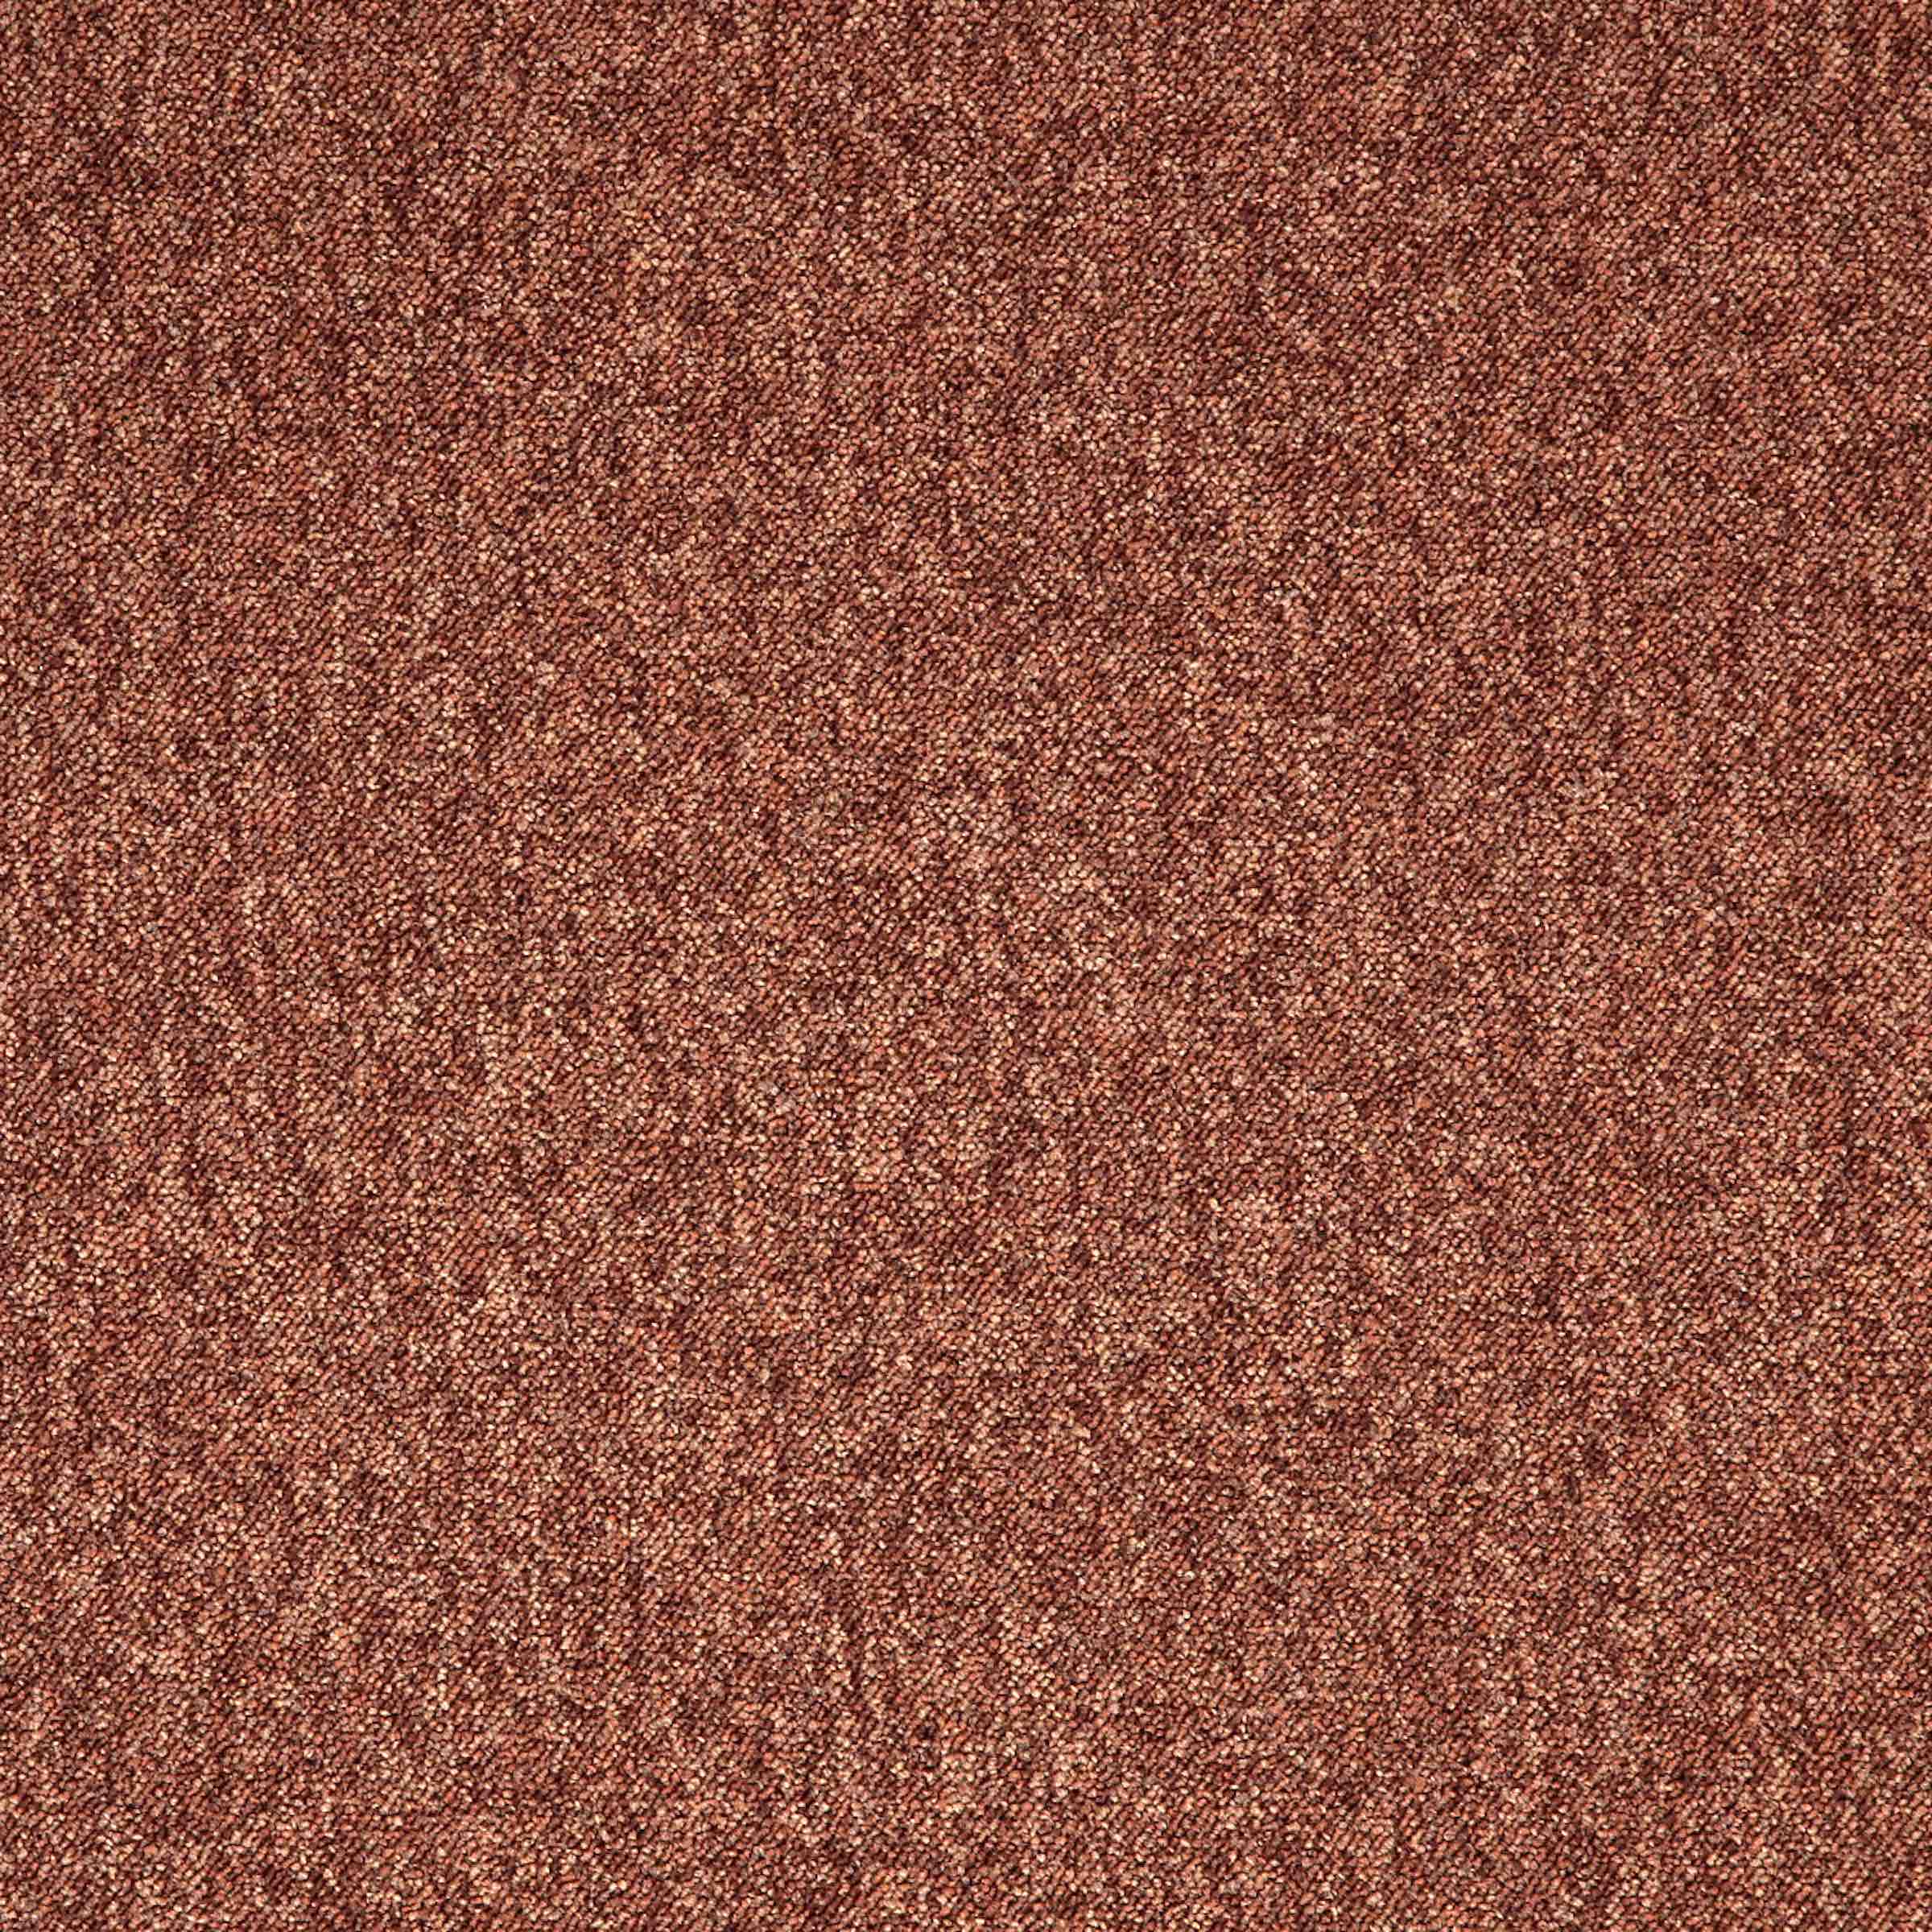 Toccarre | Marrone | Paragon Carpet Tiles | Commercial Carpet Tiles